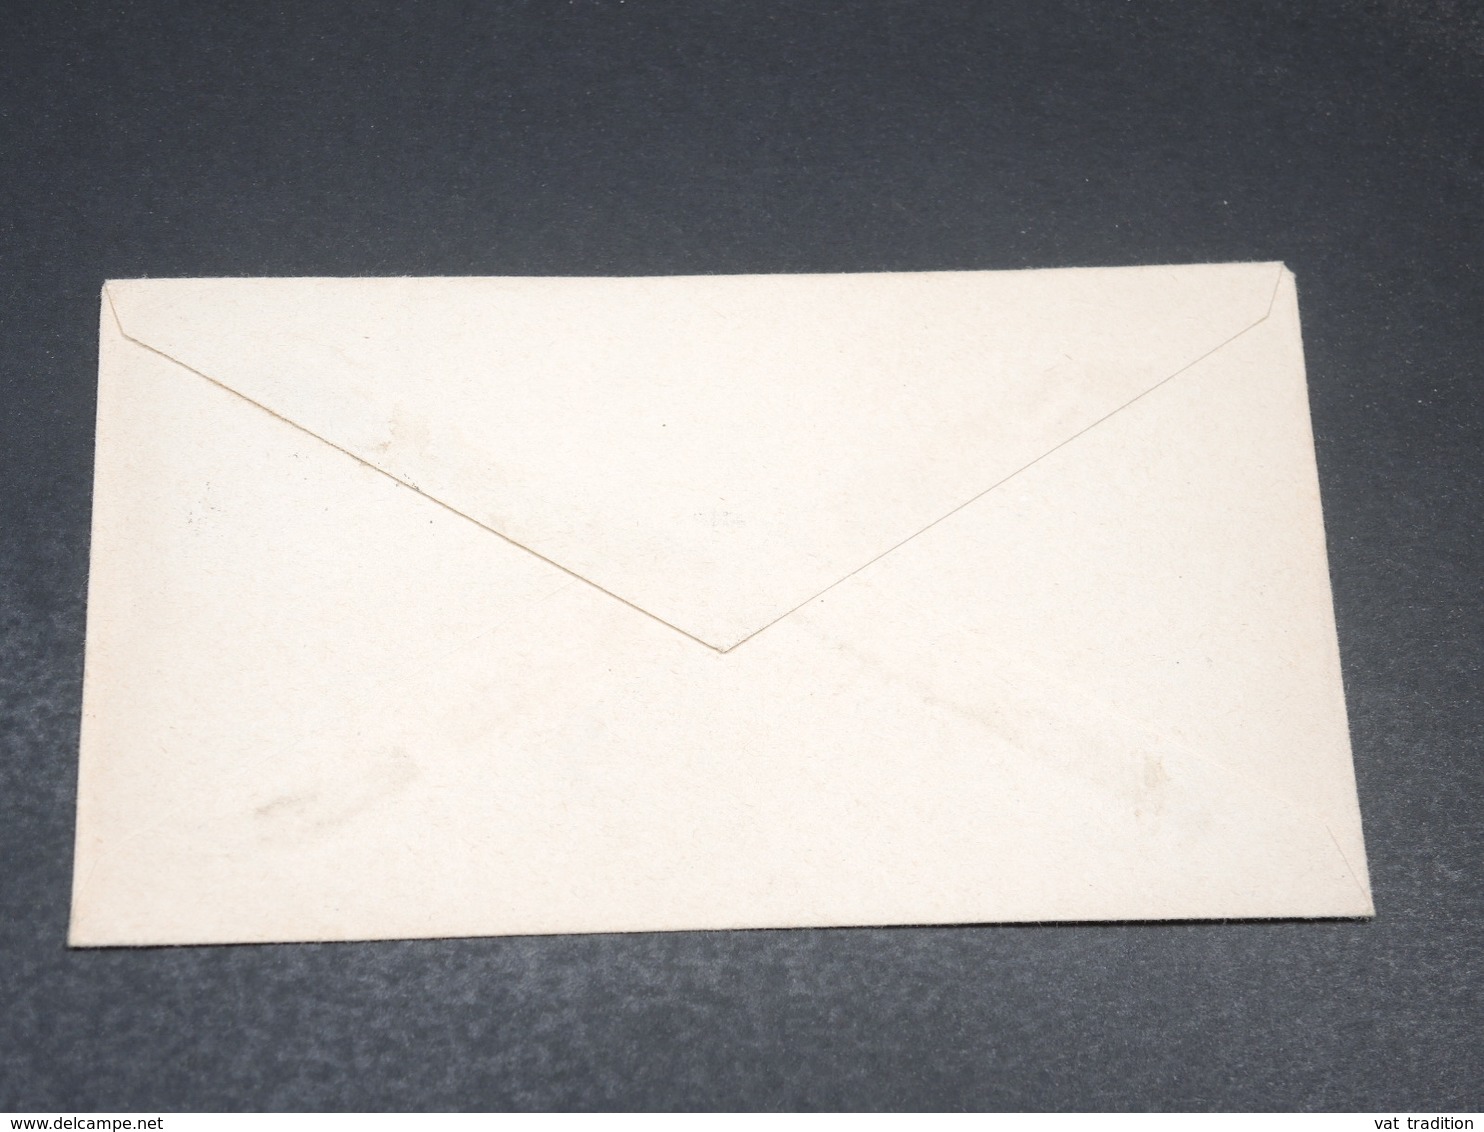 AUSTRALIE ANTARCTIQUE - Enveloppe De Casey En 1972 , Affranchissement Plaisant - L 19719 - Lettres & Documents